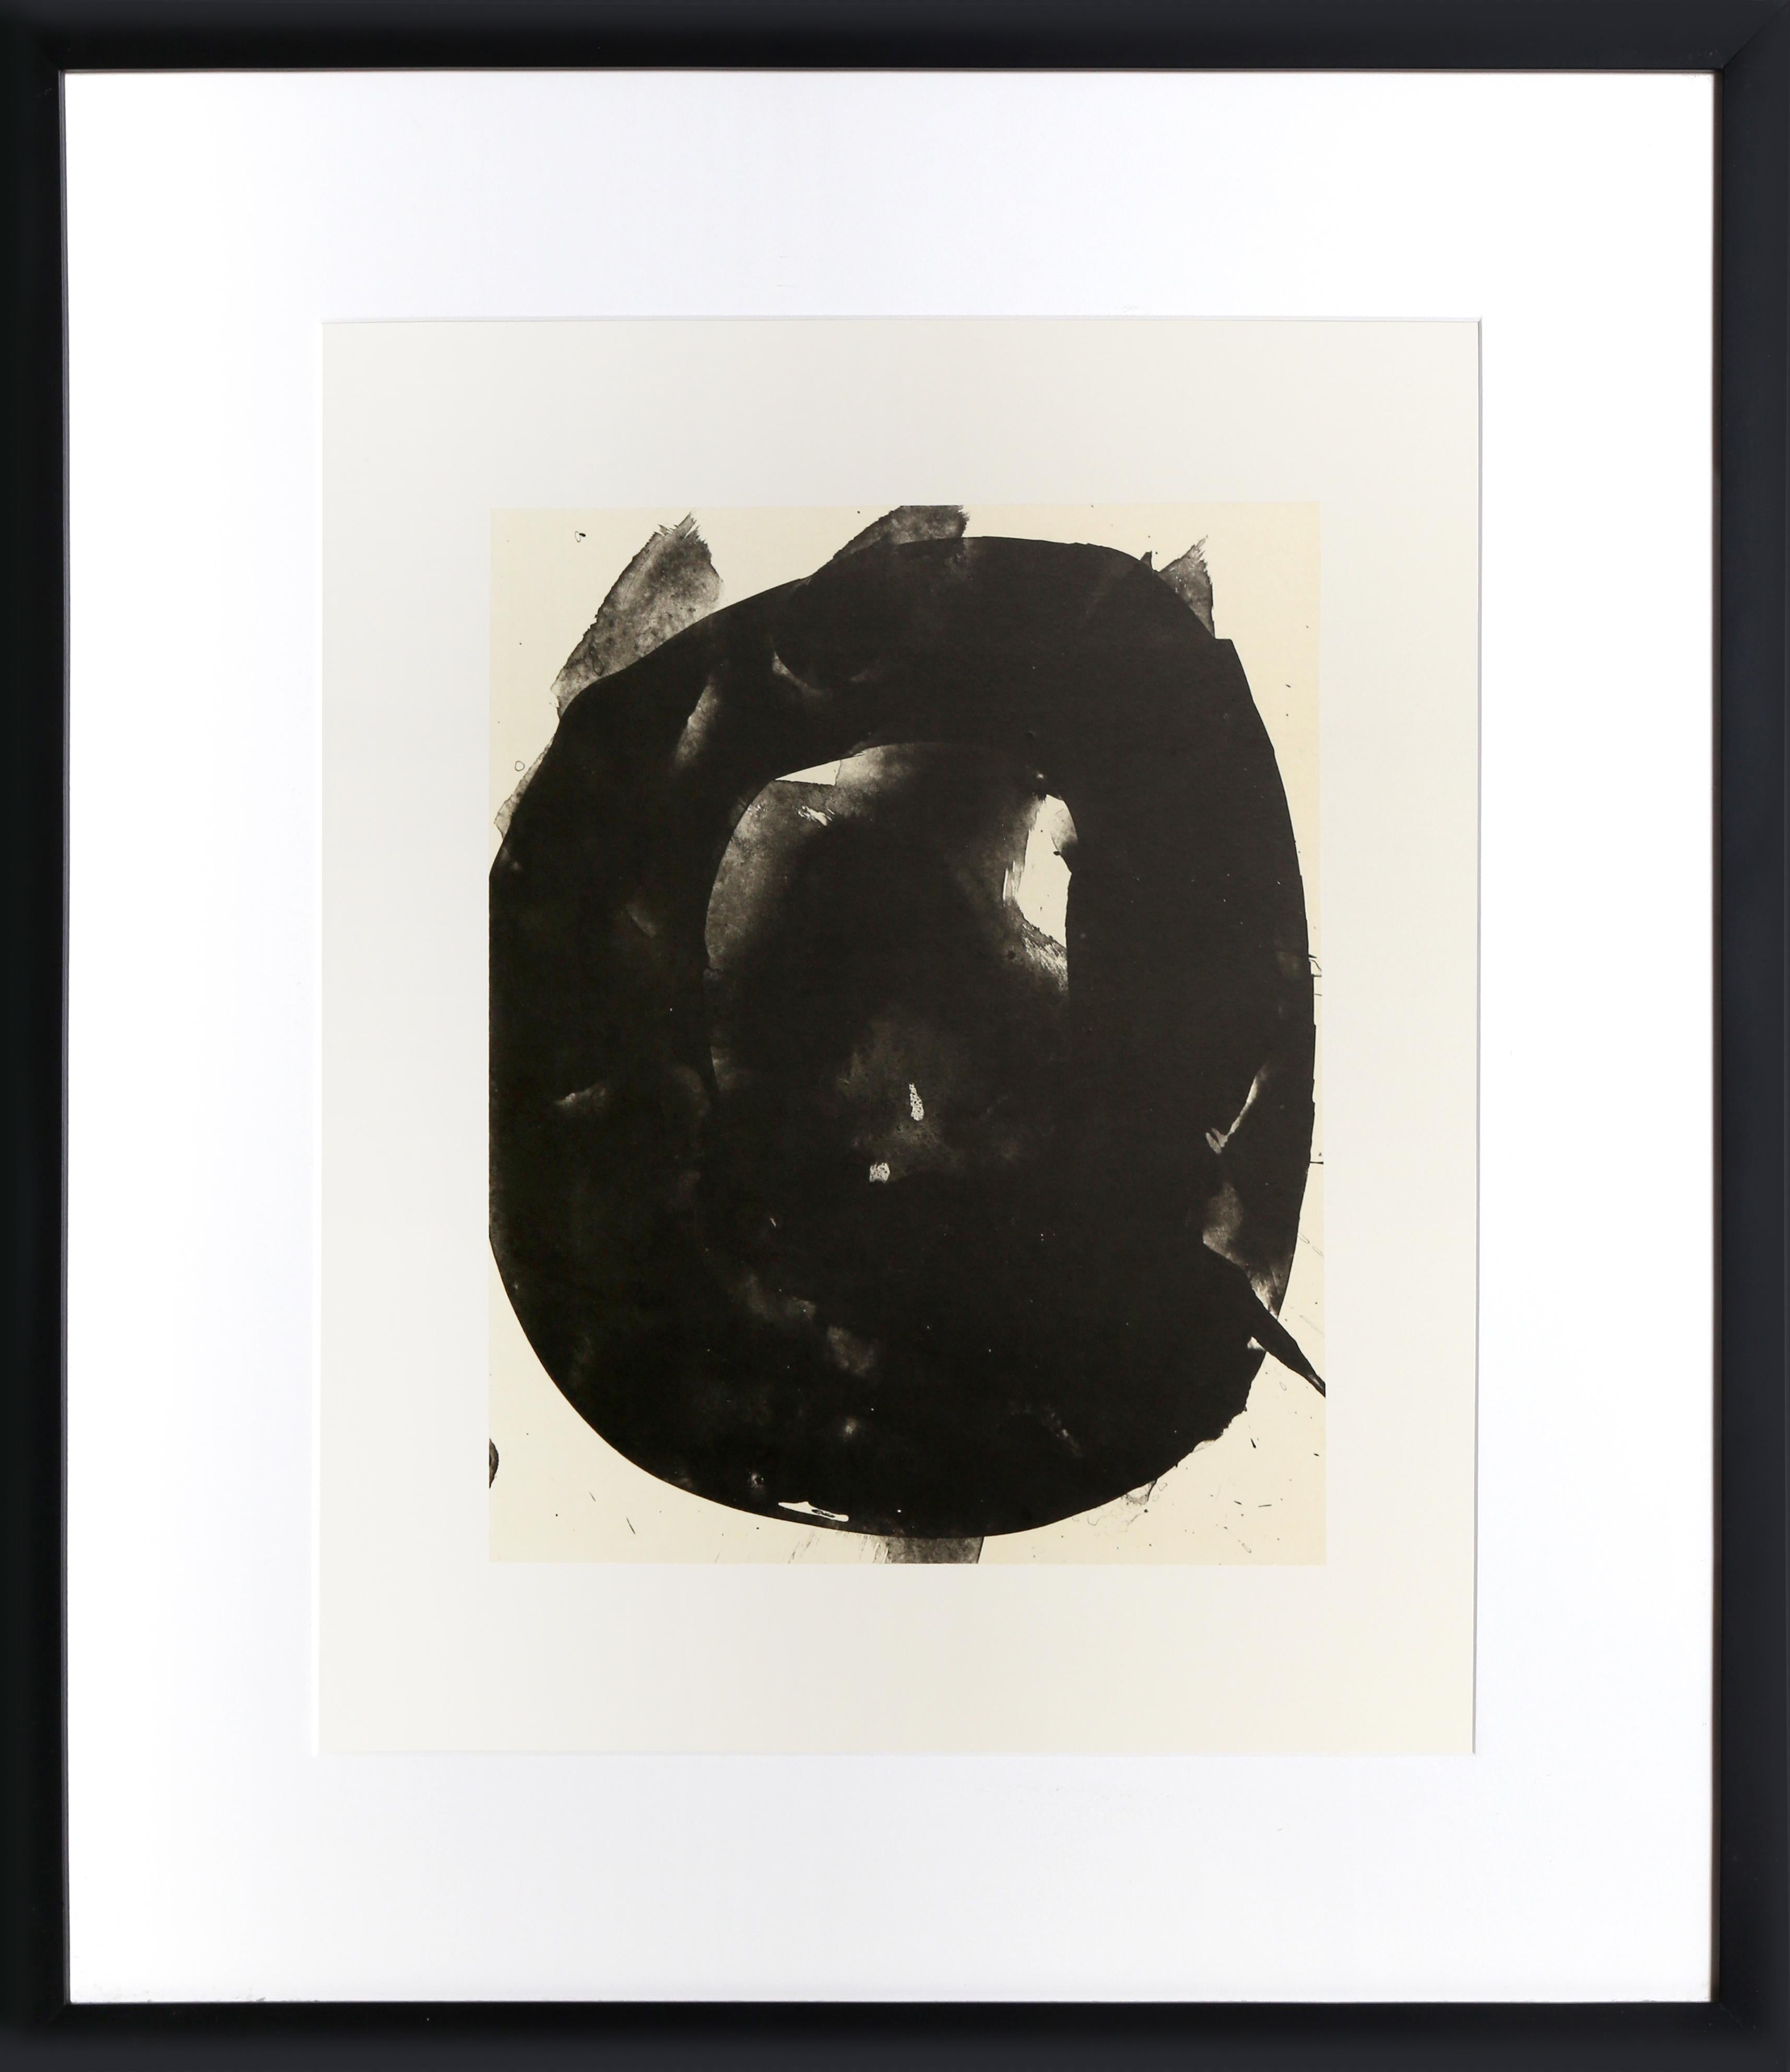 N.º 6 de Tres poemas, litografía abstracta de Robert Motherwell